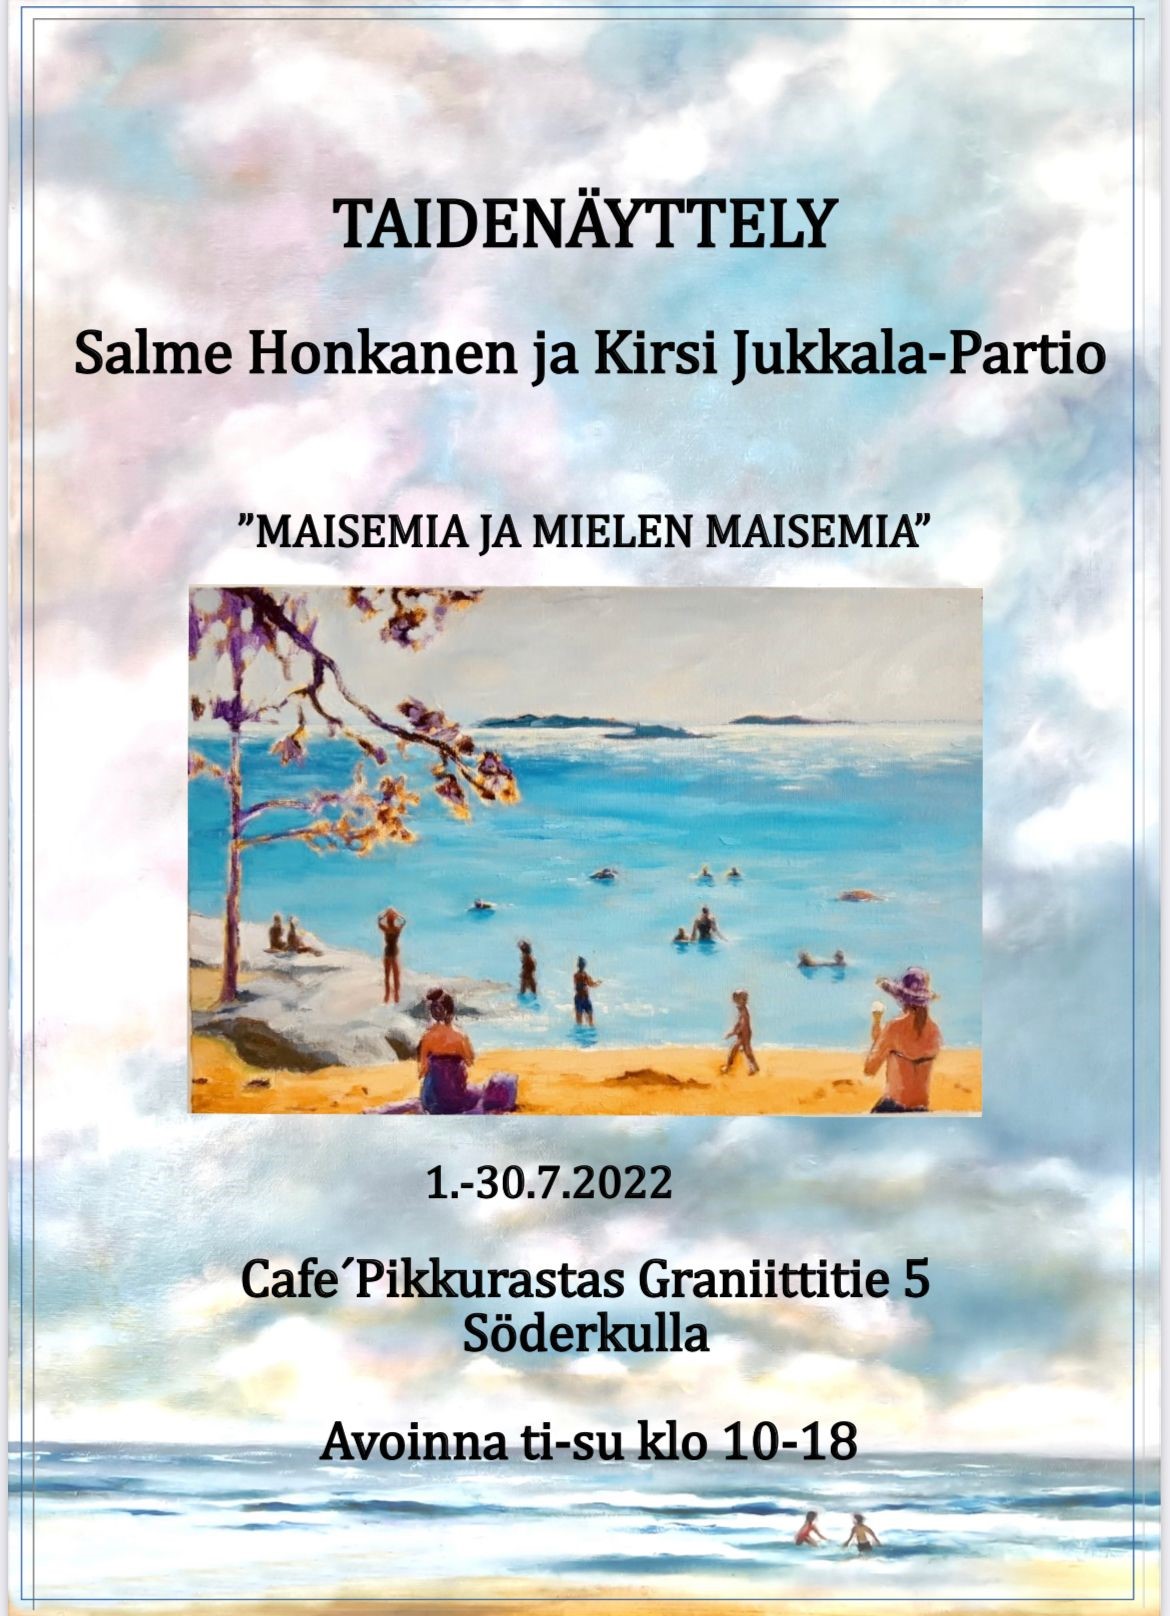 Maisemia ja Mielen maisemia Kirsi Jukkala-Partio ja Salme Honkanen